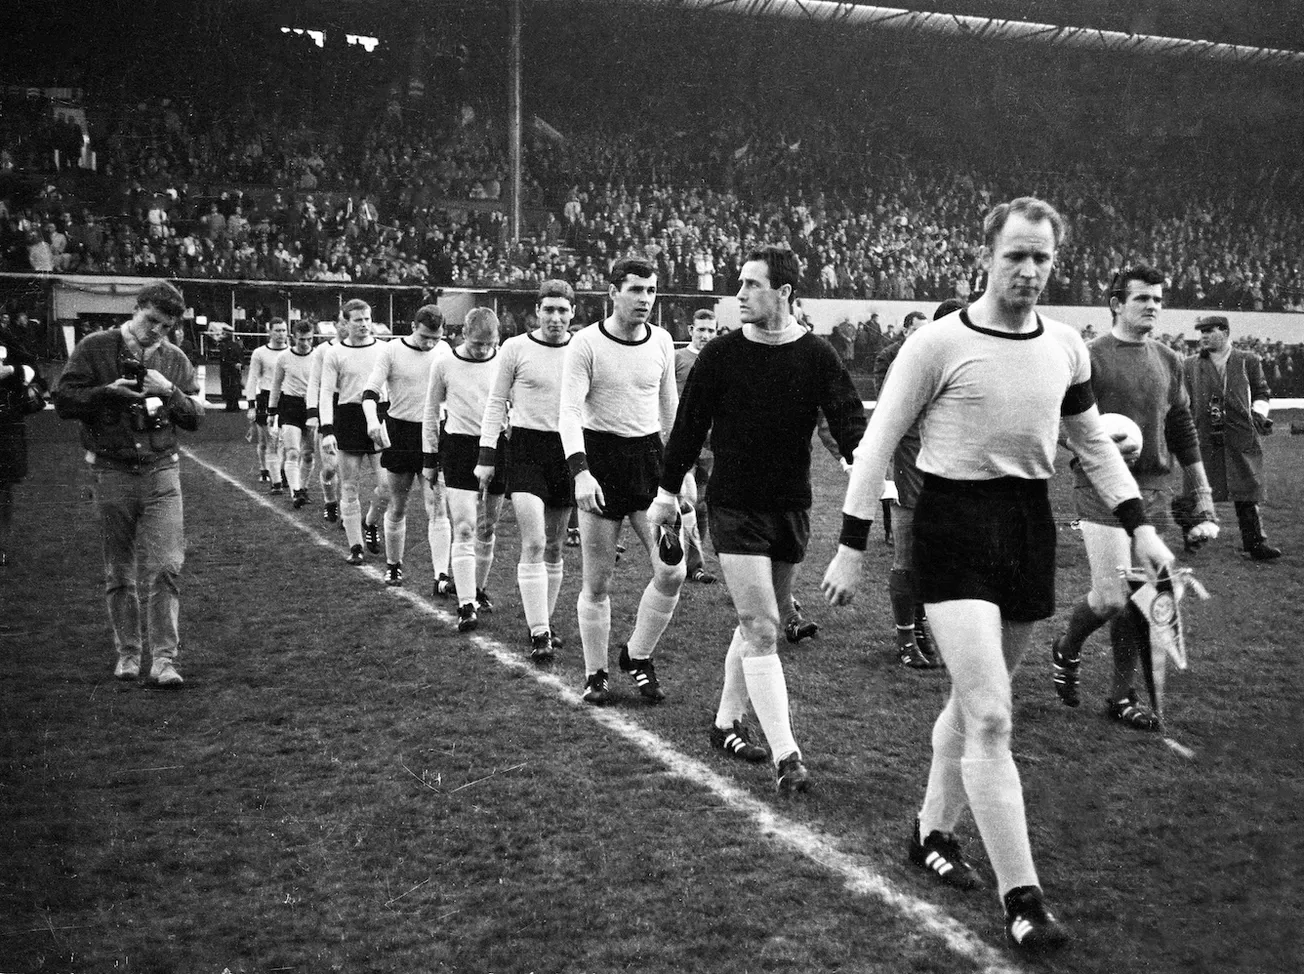 Der BVB 1966: Die späteren Helden schreiten zur Tat. Foto: Imago / Horstmüller